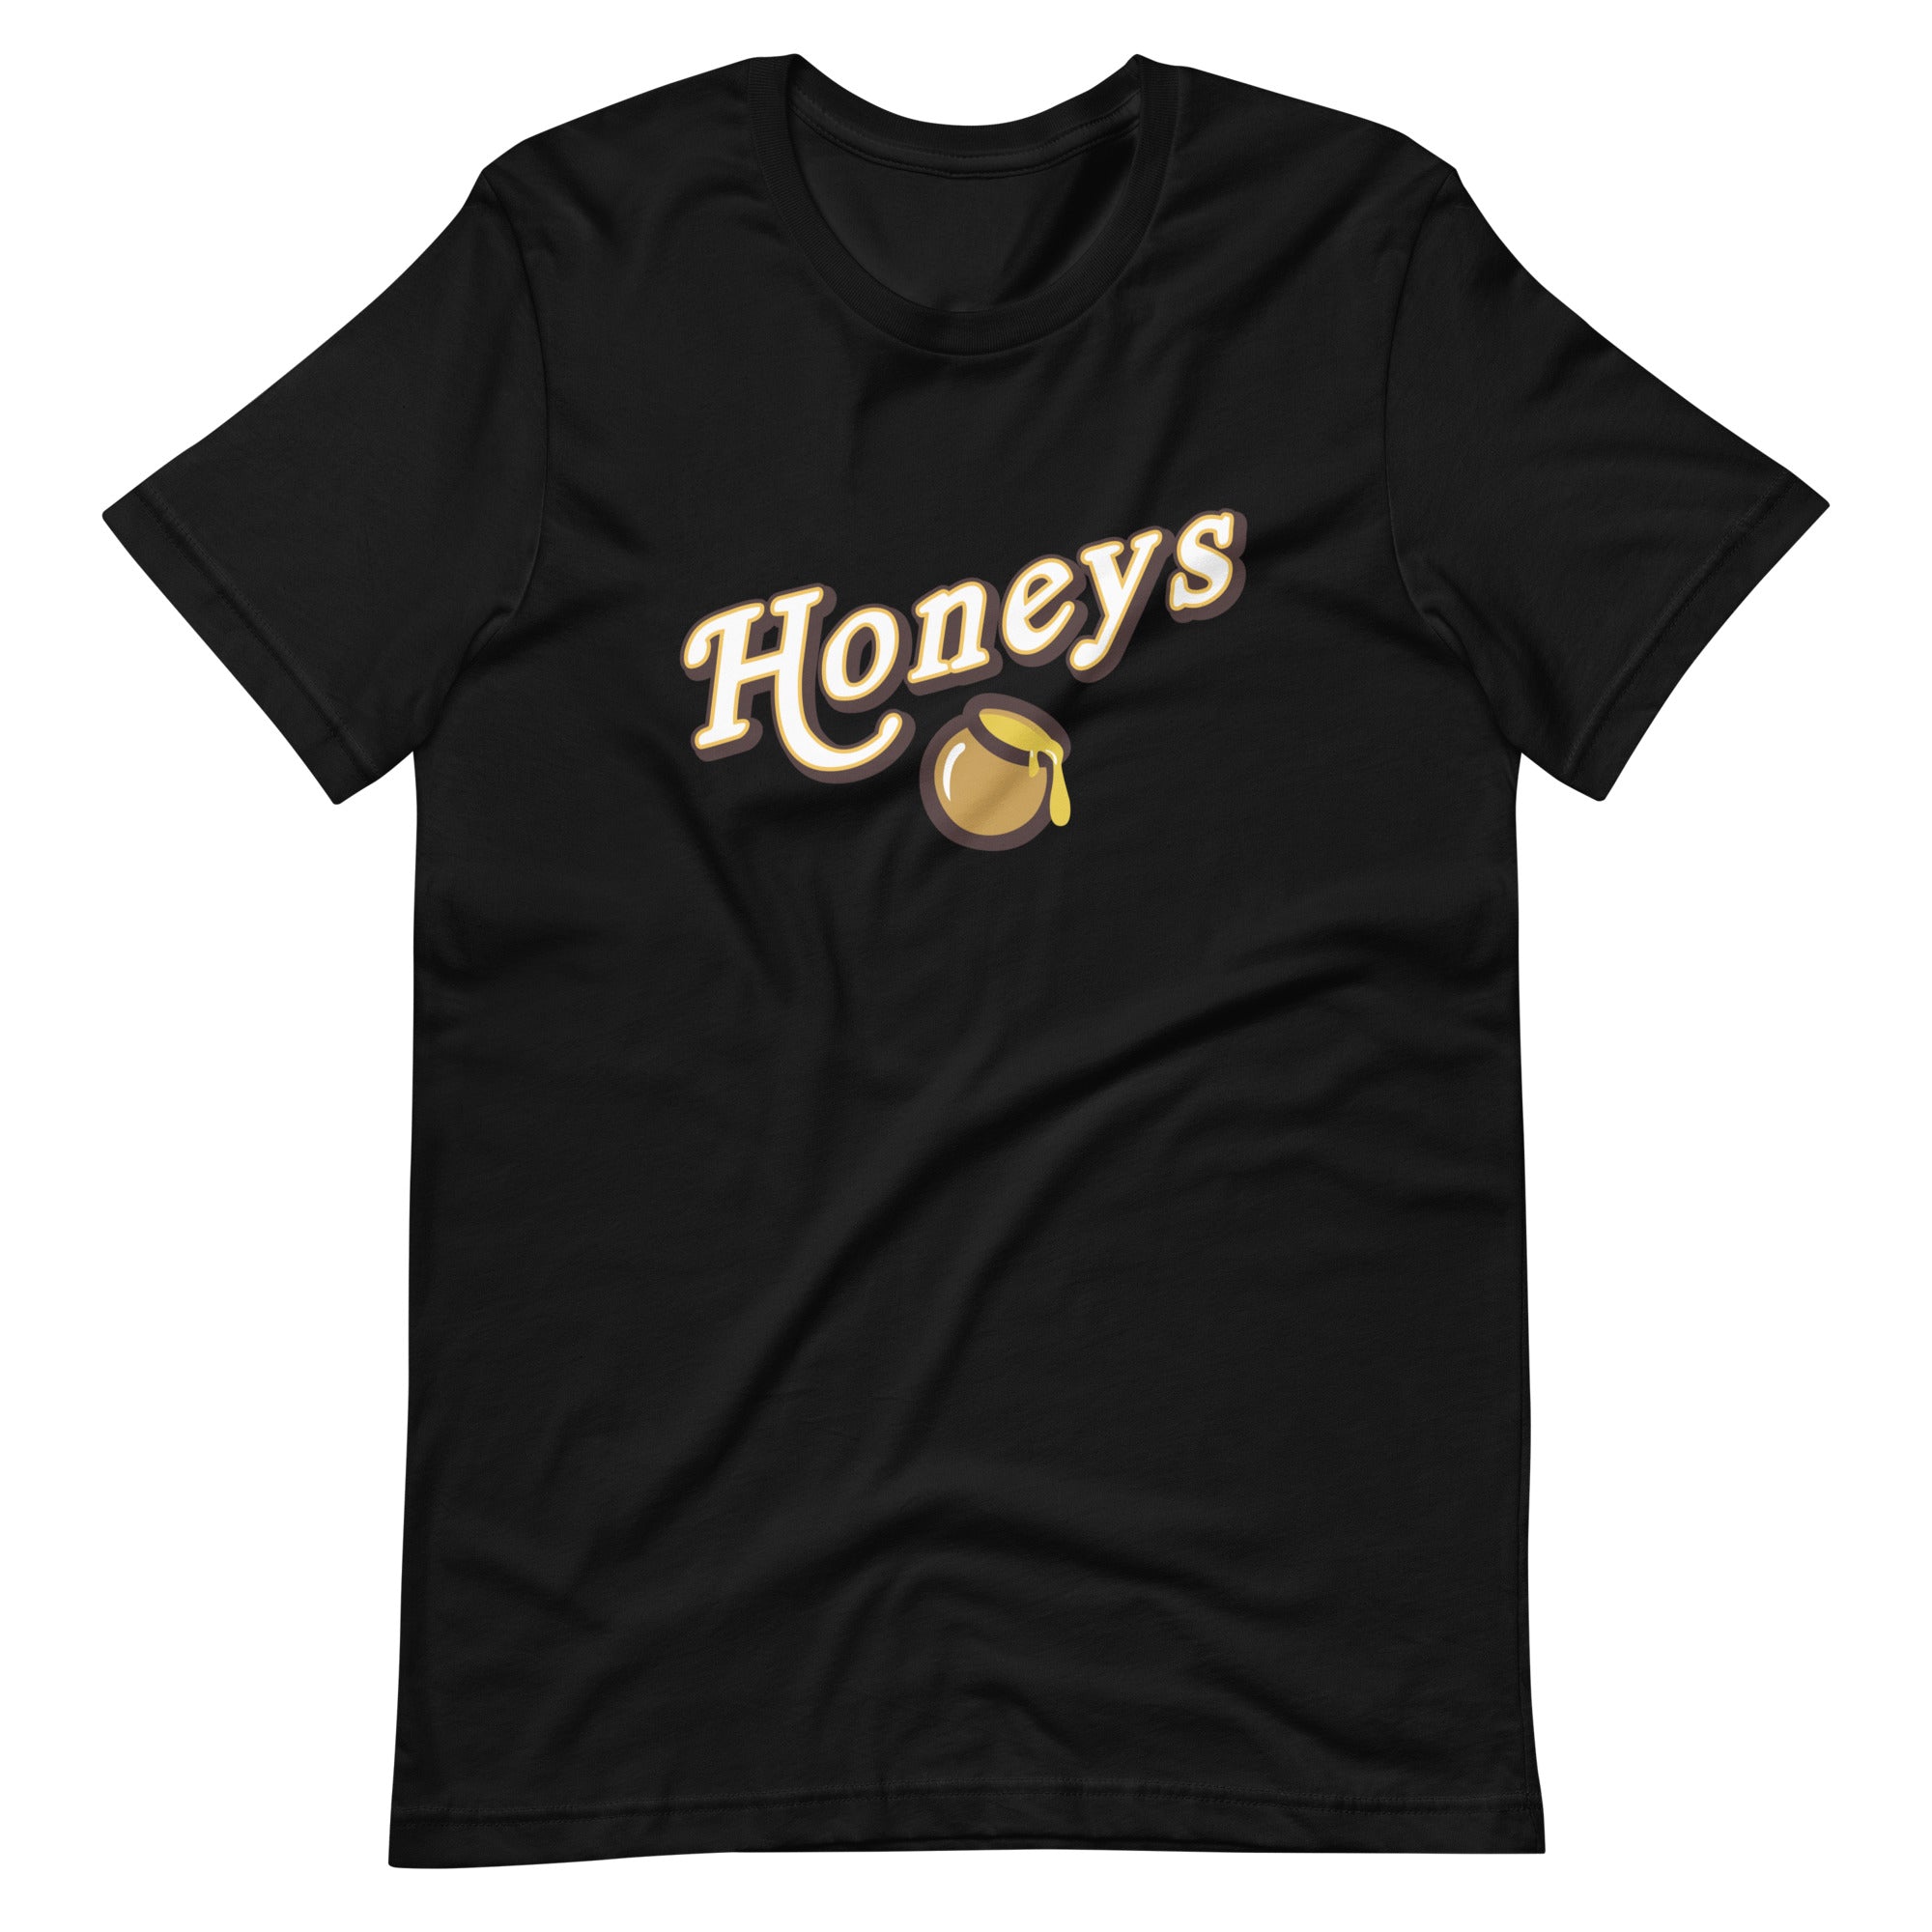 Mike Sorrentino Honeys Shirt